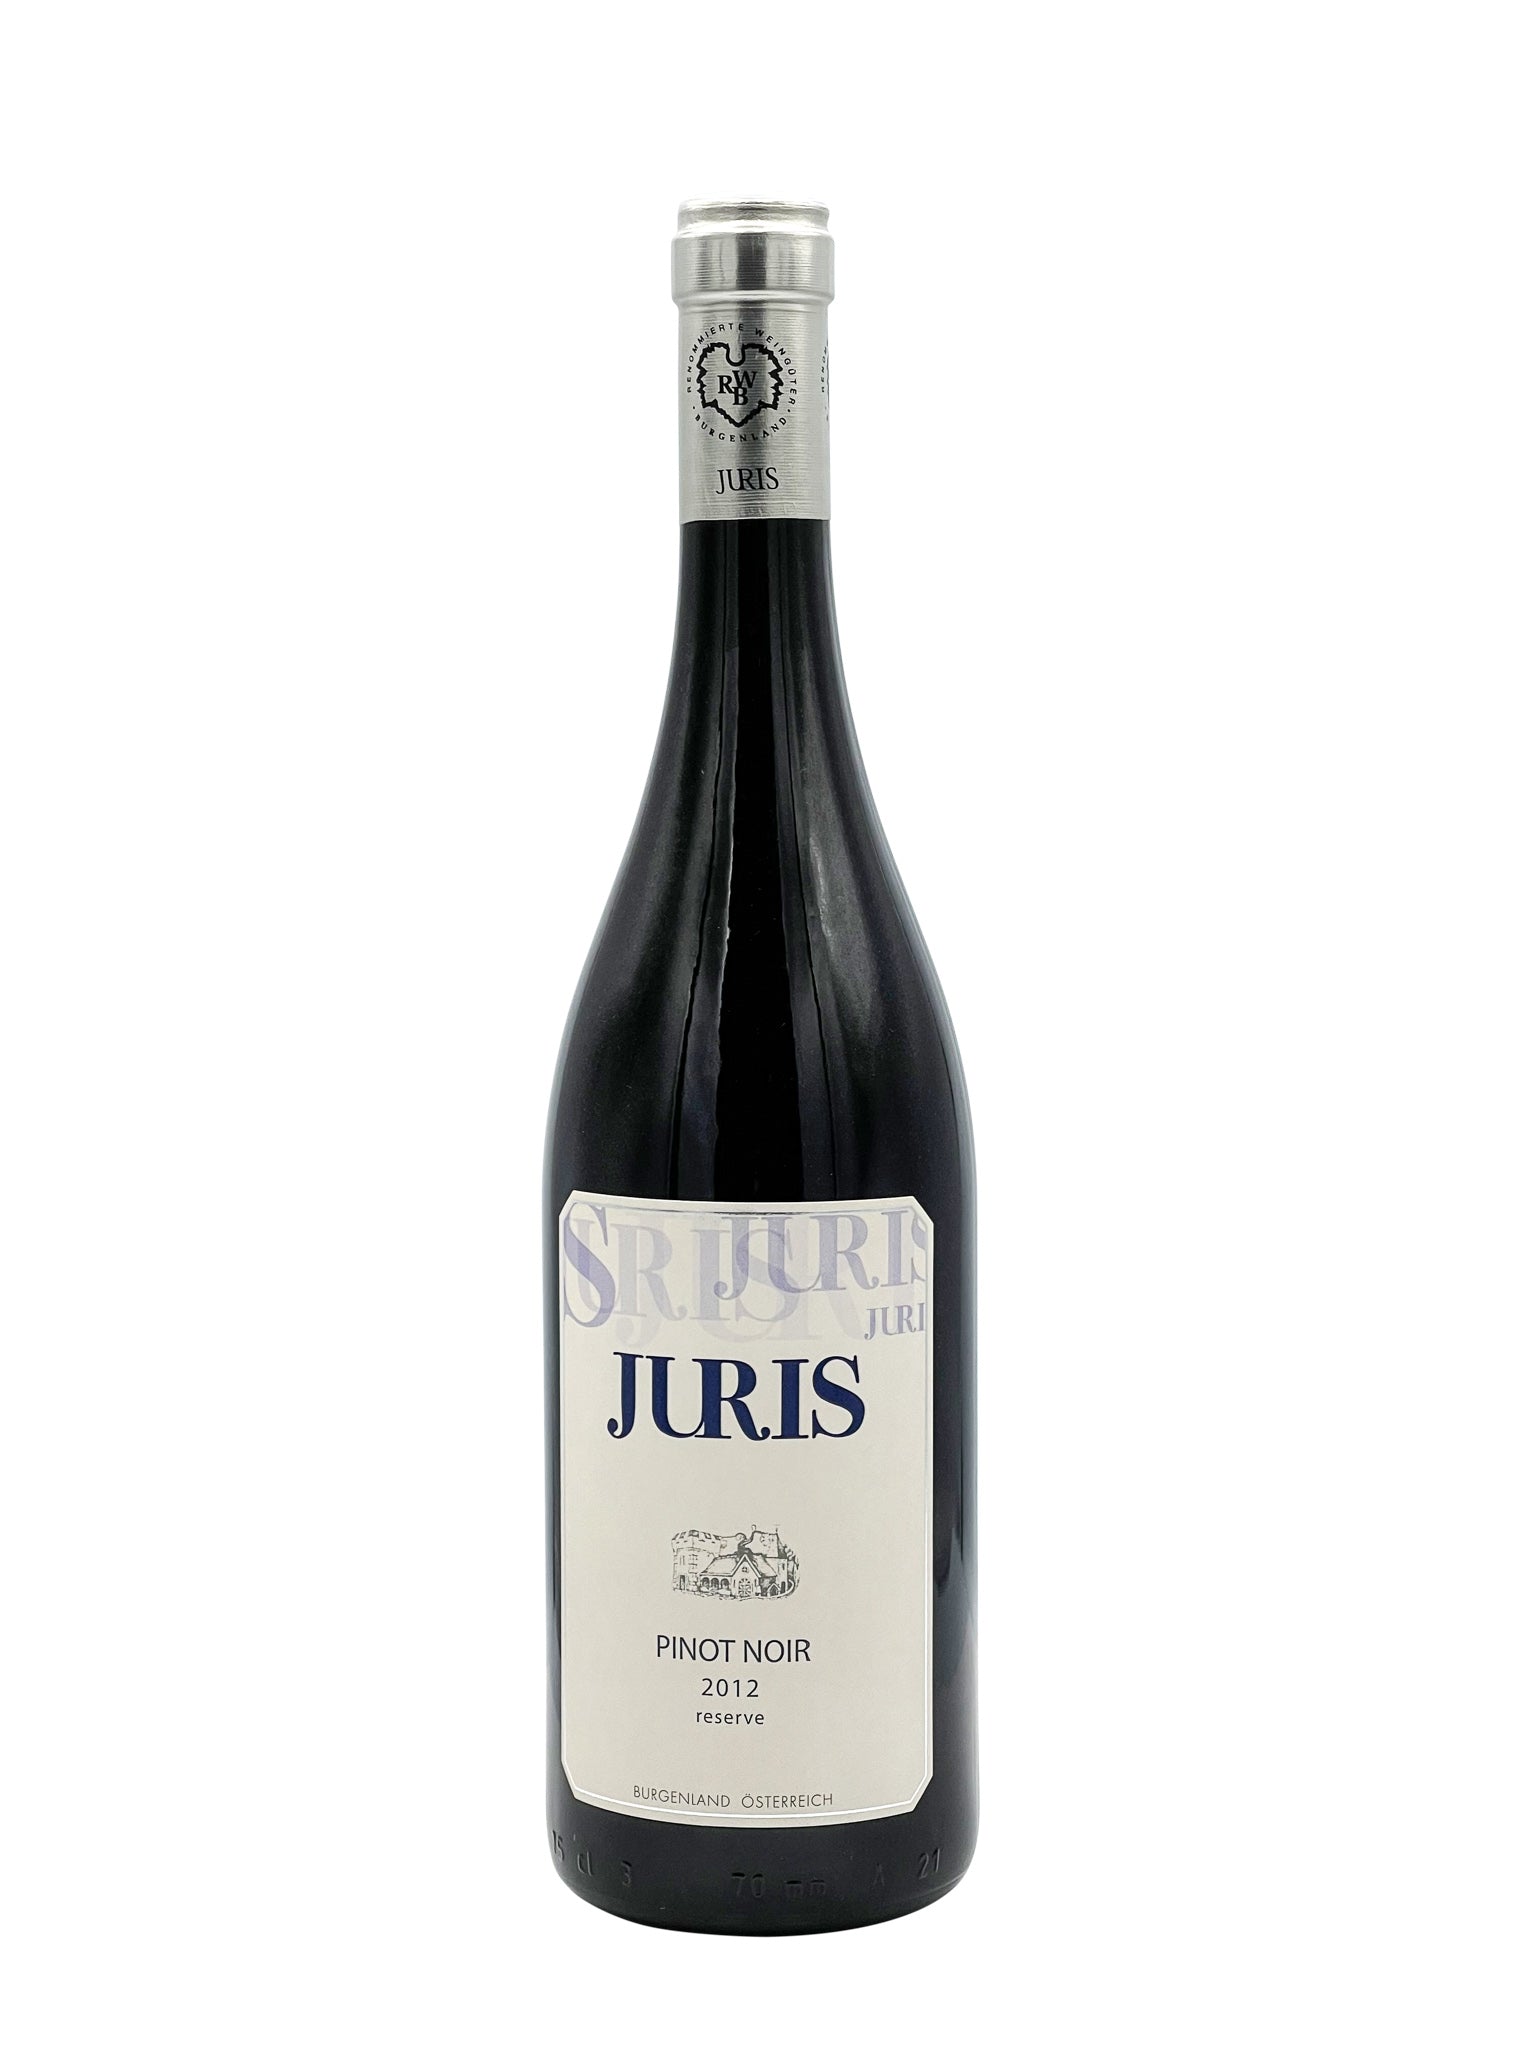 Juris Pinot Noir "Reserve" '12